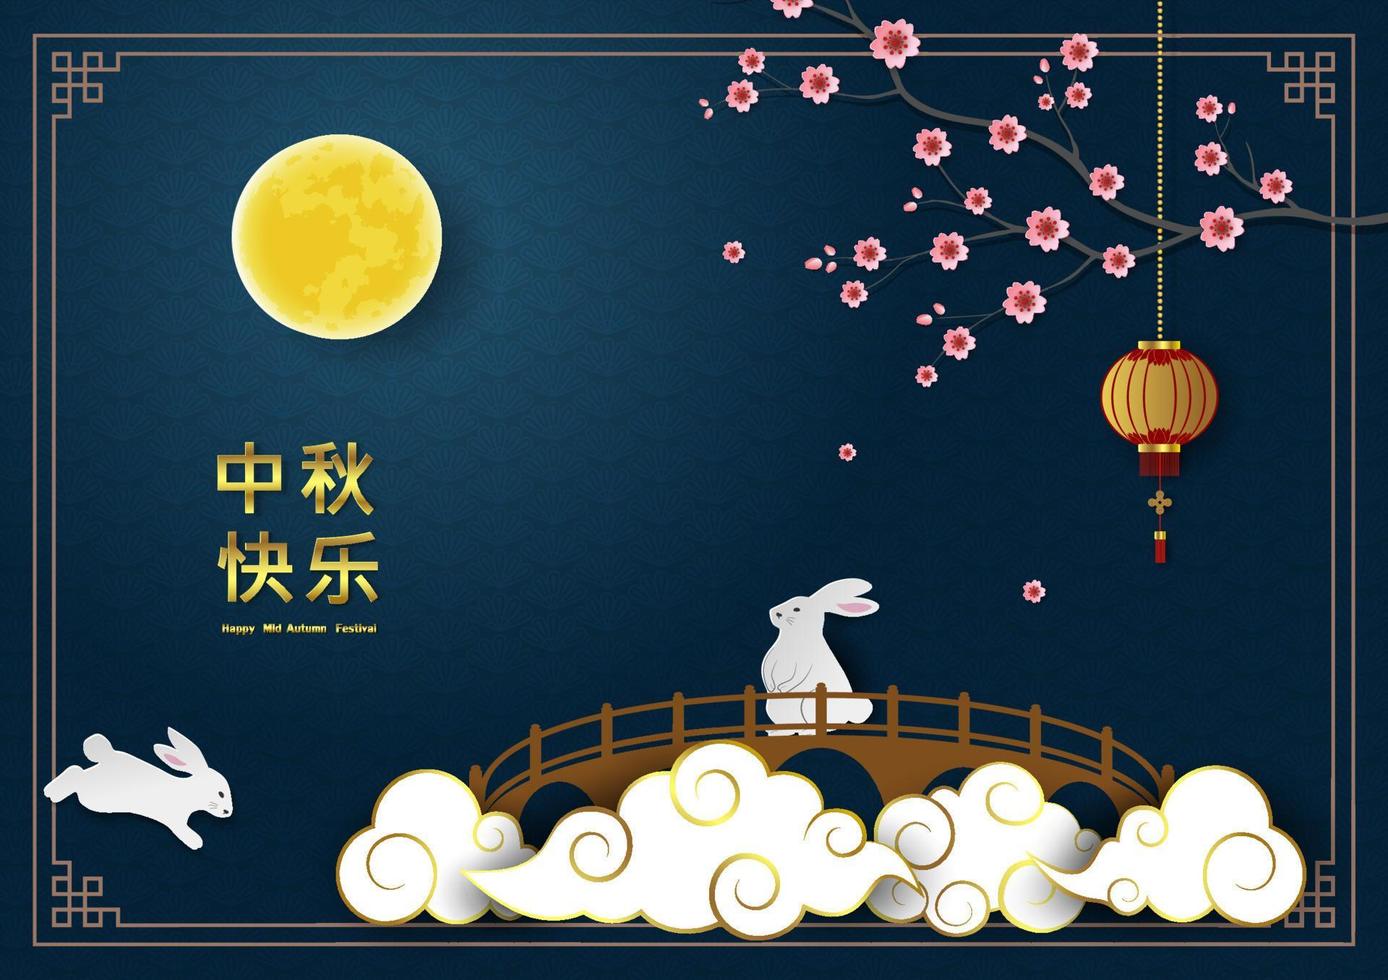 festival de mediados de otoño, tema de celebración con luna llena, lindos conejos, flor de cerezo, linterna, texto chino y nube en el fondo de la escena nocturna vector